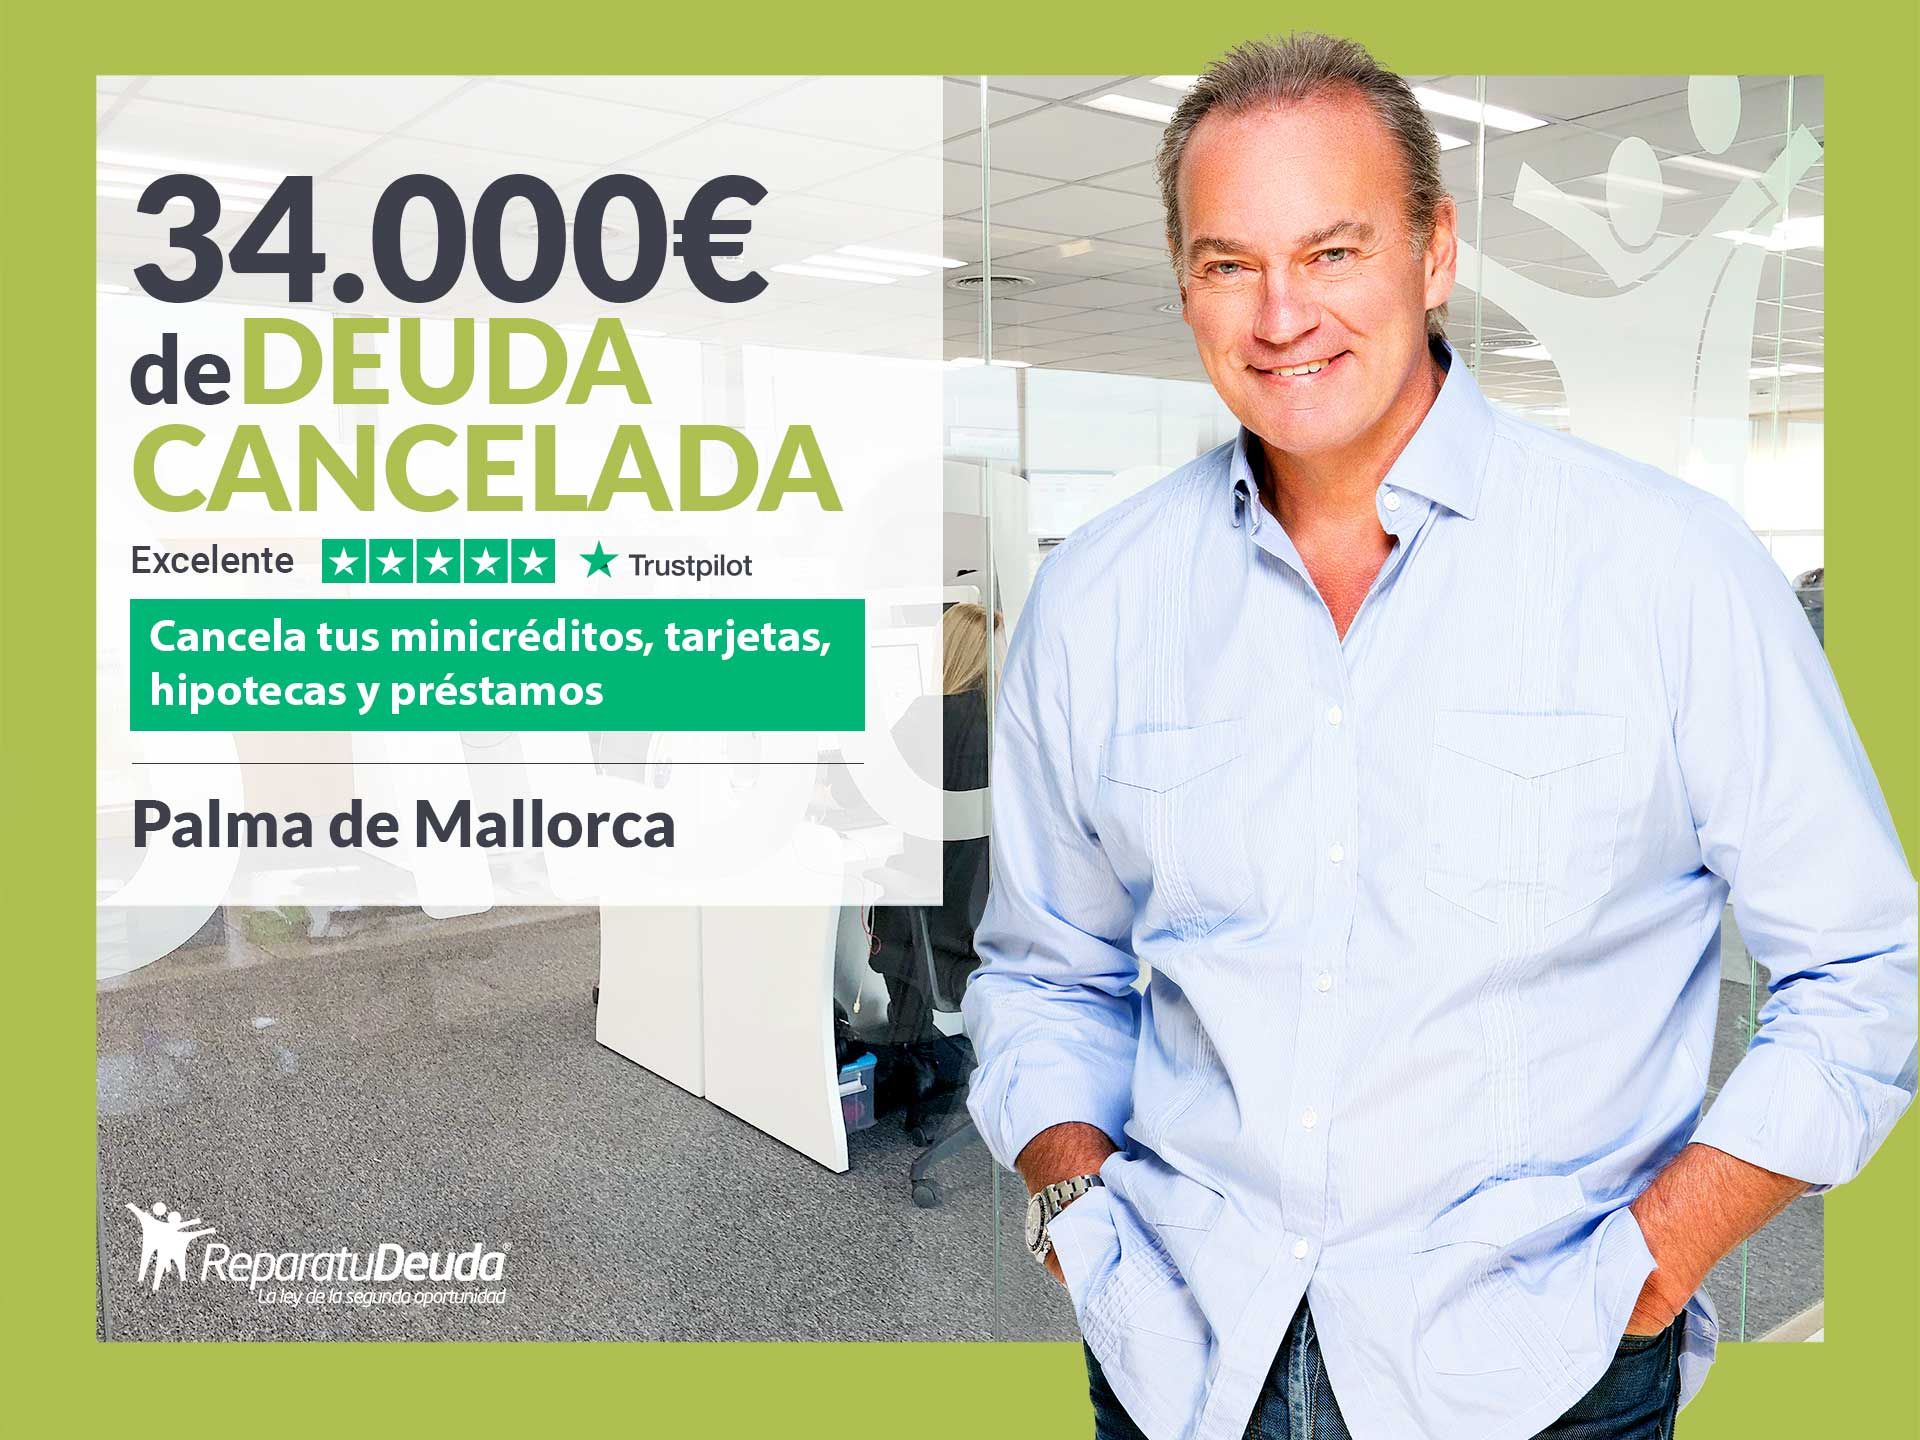 Repara tu Deuda Abogados cancela 34.000? en Palma de Mallorca (Baleares) con la Ley de Segunda Oportunidad